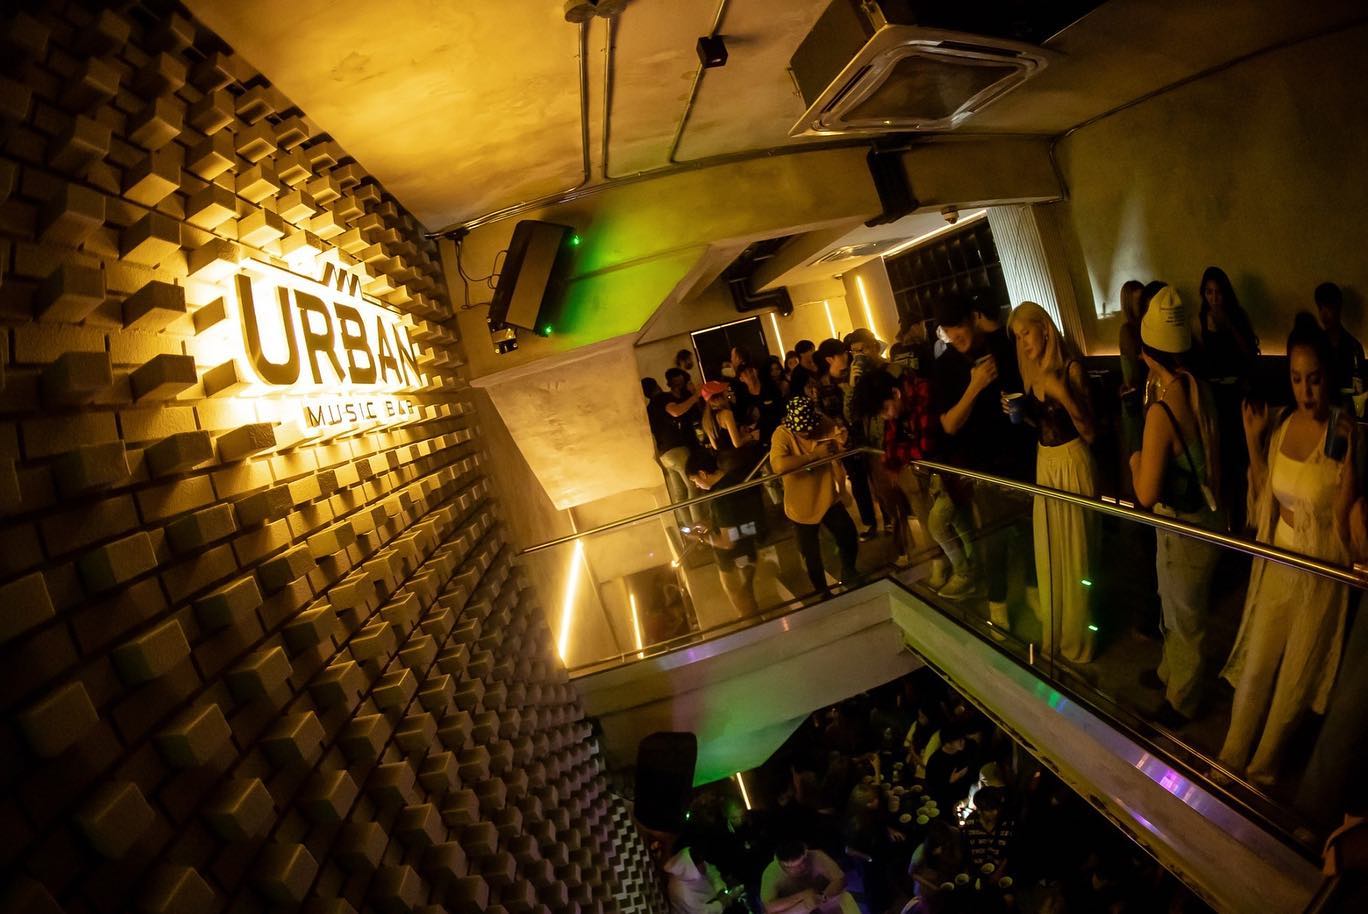 เออร์เบิ้น มิวสิค บาร์ (Urban Music Bar) : กรุงเทพมหานคร (Bangkok)